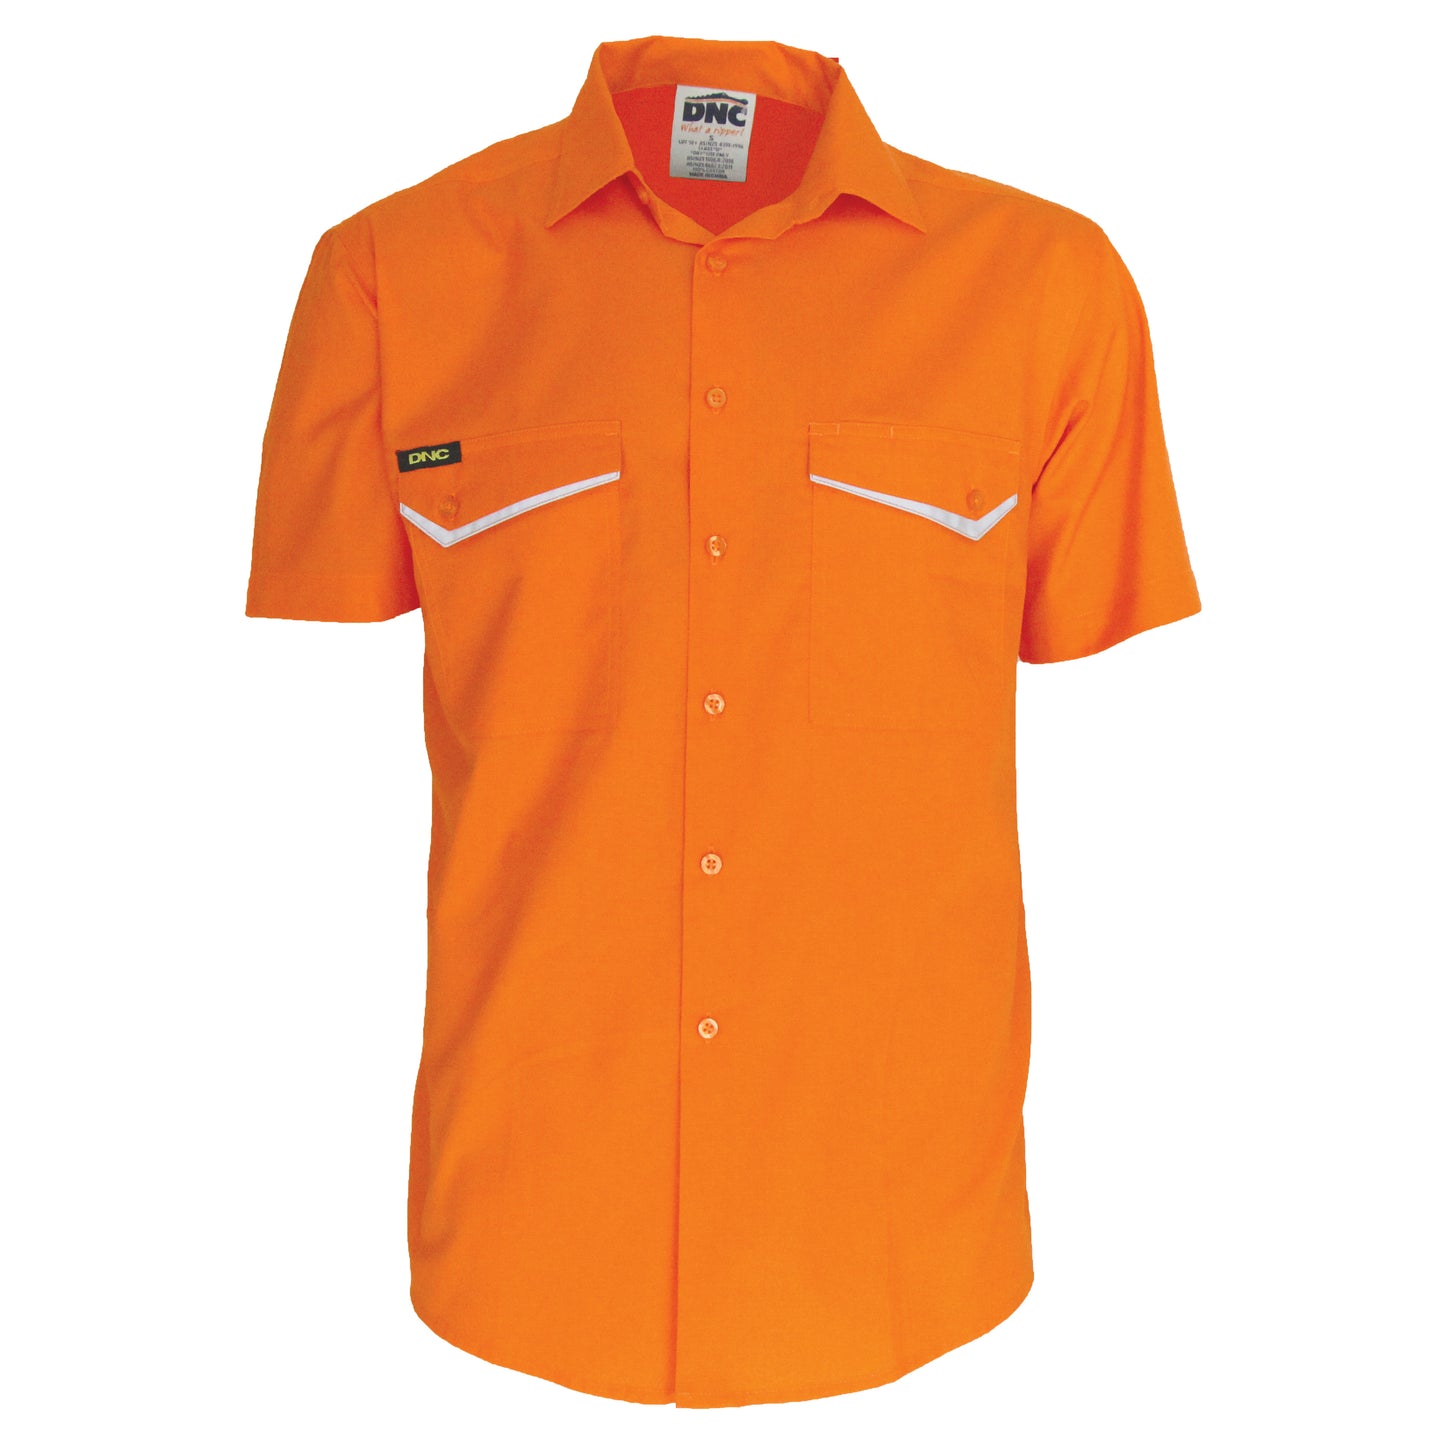 DNC HiVis RipStop Cotton Cool Shirt, S/S 3583 - Star Uniforms Australia